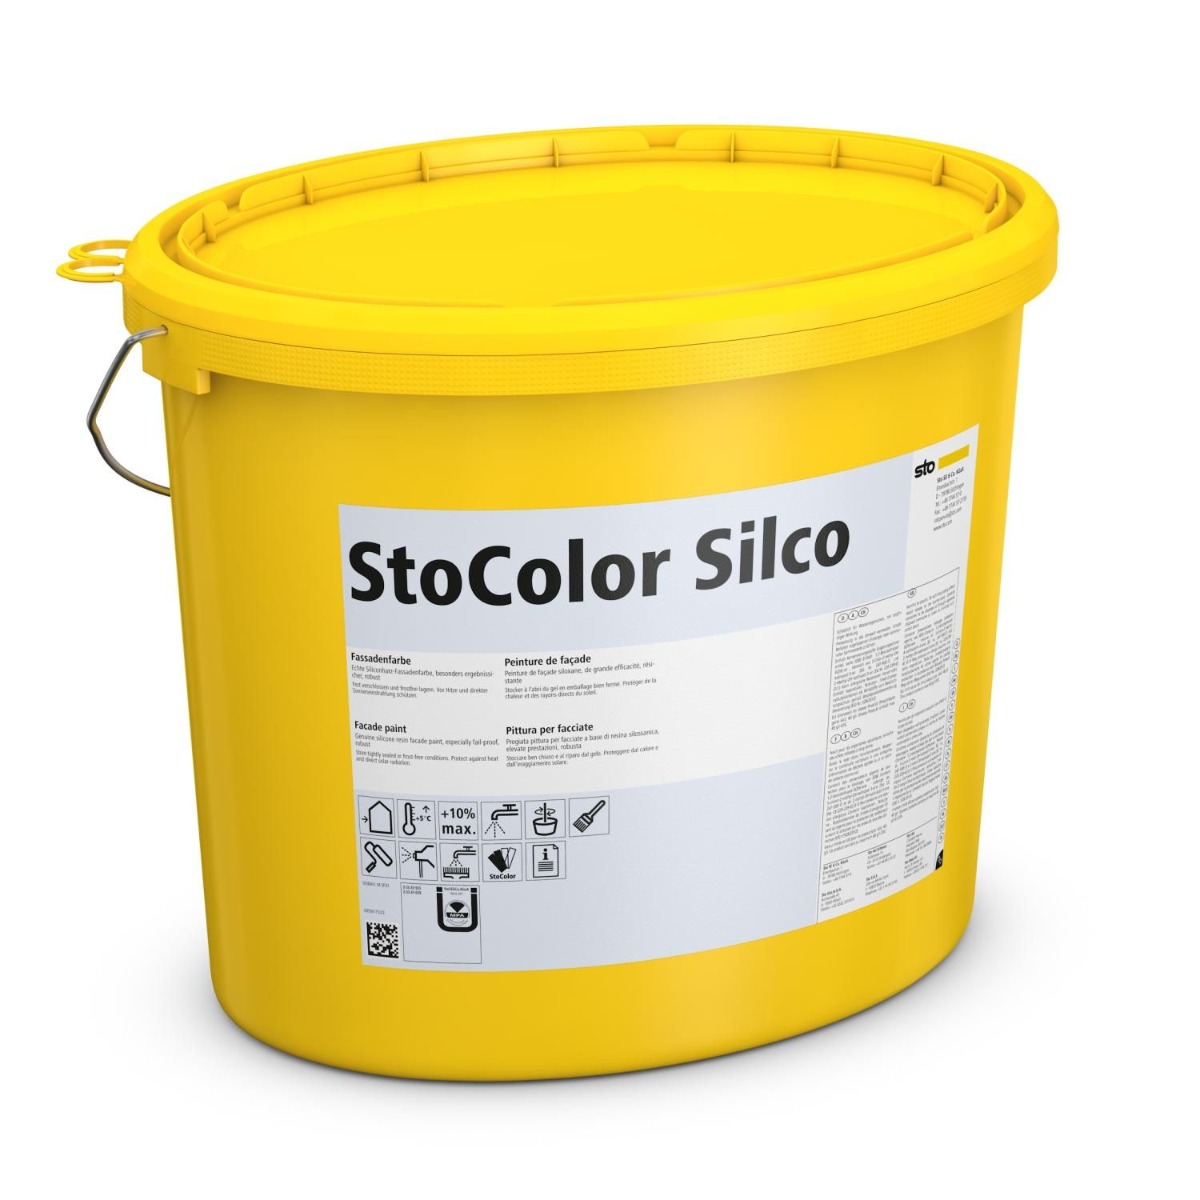 15L StoColor Silco, im Farbton 37301